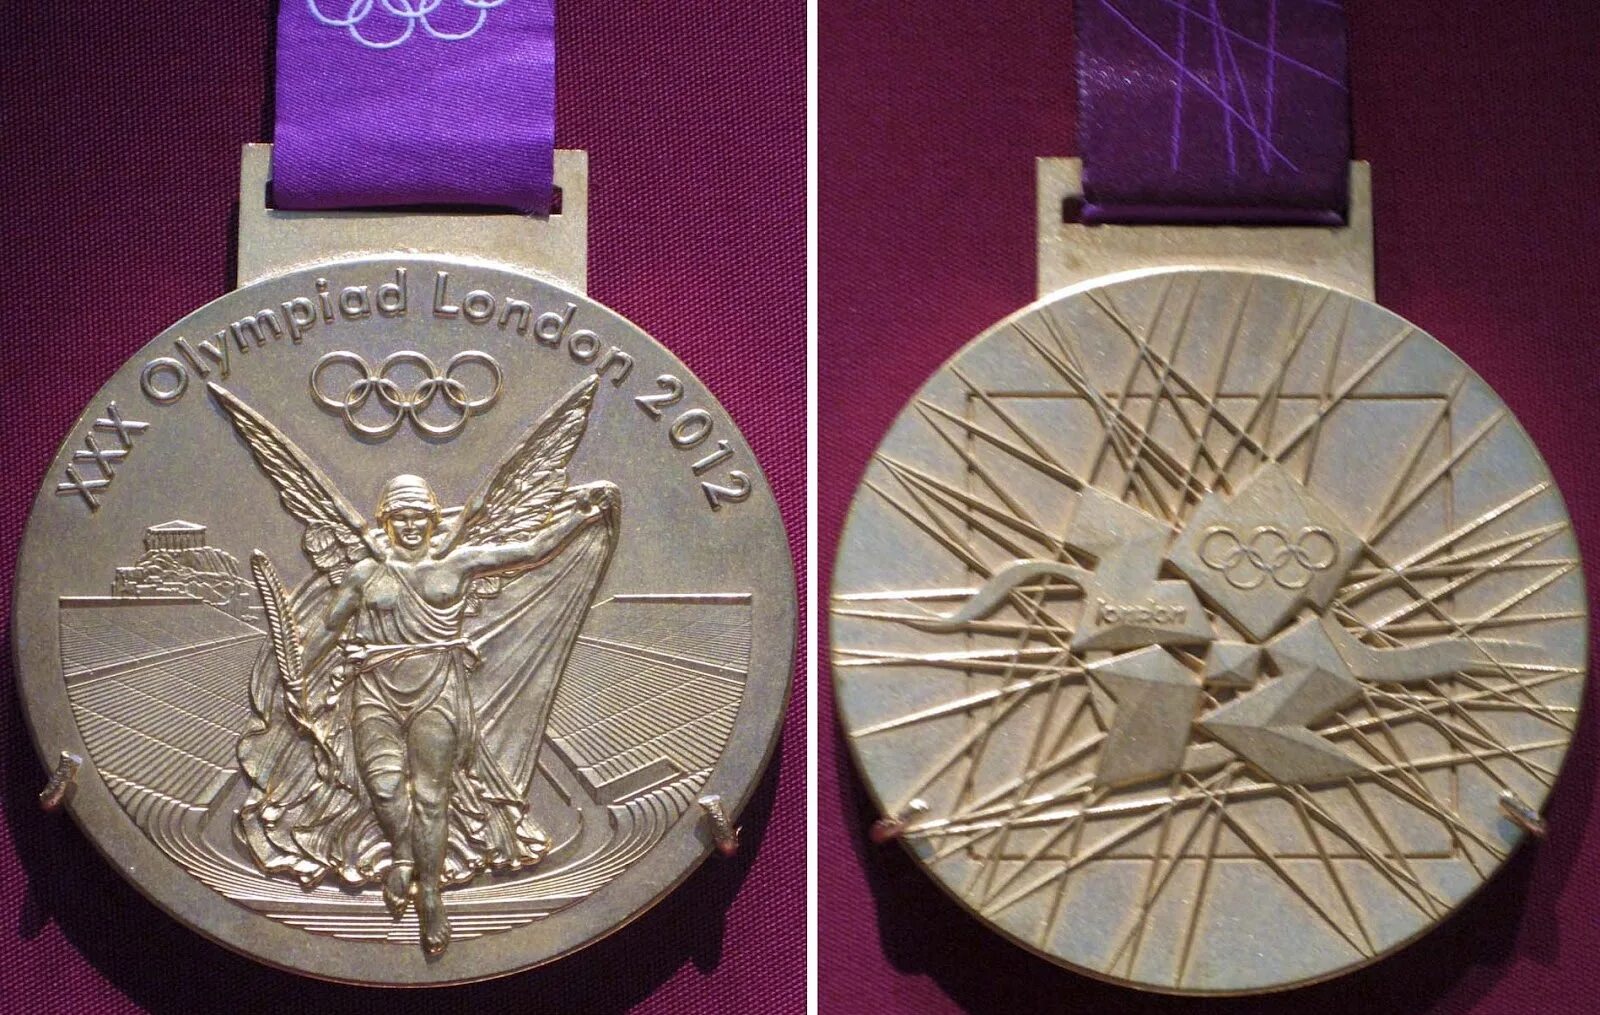 Medal 2012. Олимпийская медаль Лондон 2012. Золотая медаль 2012 года. Gold Olympic Medals 2012. Олимпийские игры 2012 Лондон медали.